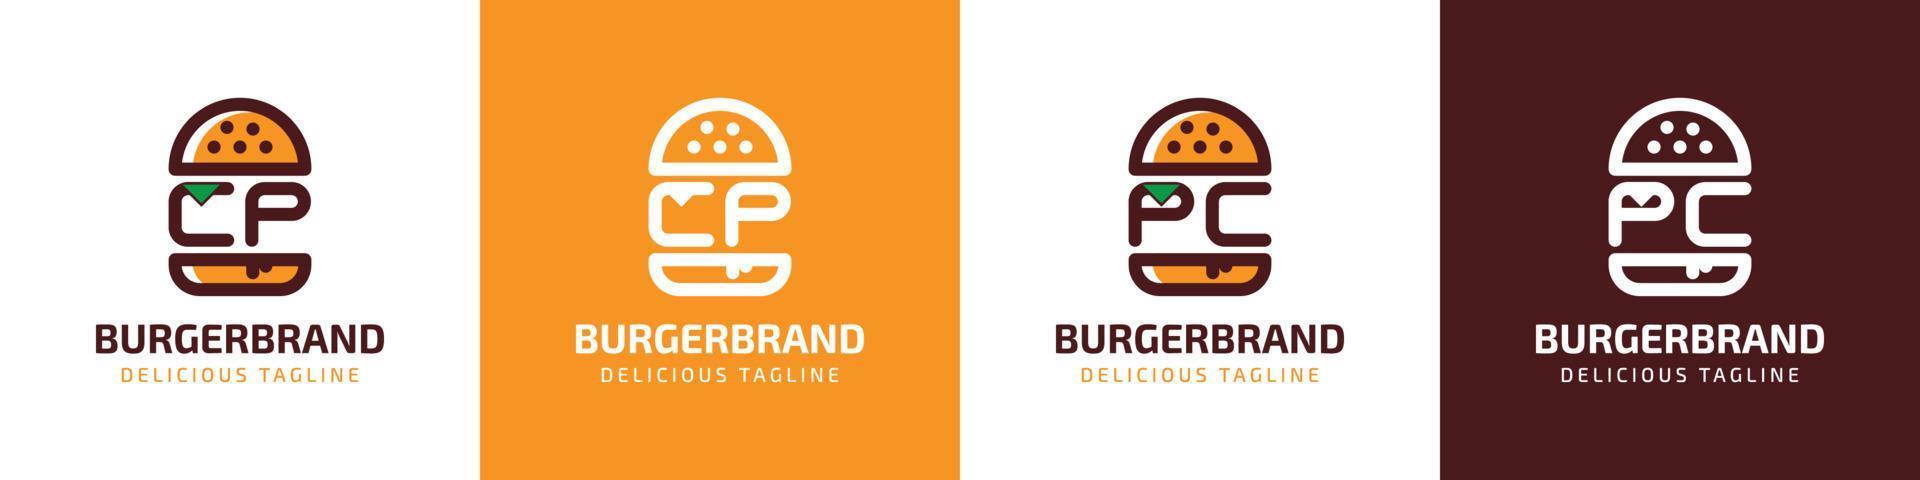 letra cp y ordenador personal hamburguesa logo, adecuado para ninguna negocio relacionado a hamburguesa con cp o ordenador personal iniciales. vector